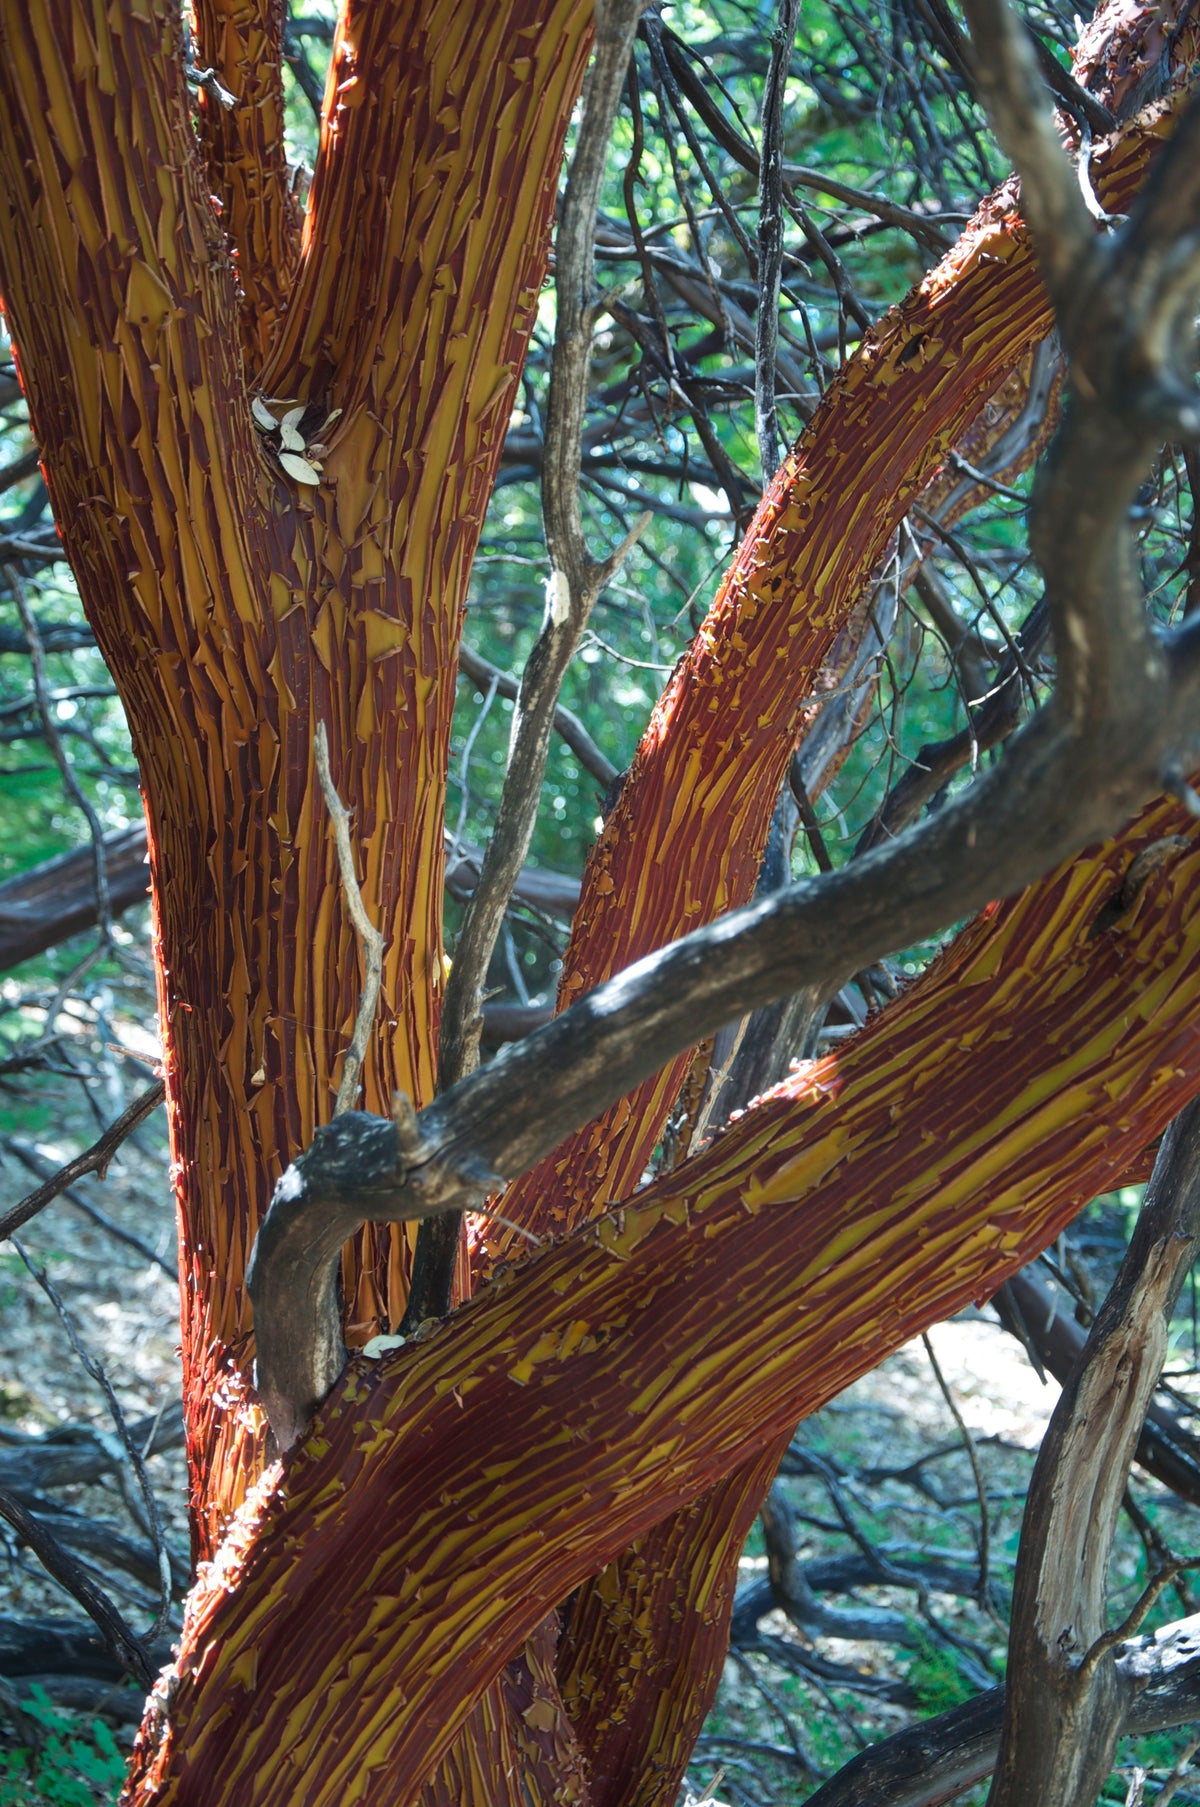 &lt;I&gt;Manzanita Tree Shedding Bark in Summer&lt;/I&gt;&lt;br&gt;Mendocino, California, 2011&lt;br&gt;&lt;br&gt;GC0125